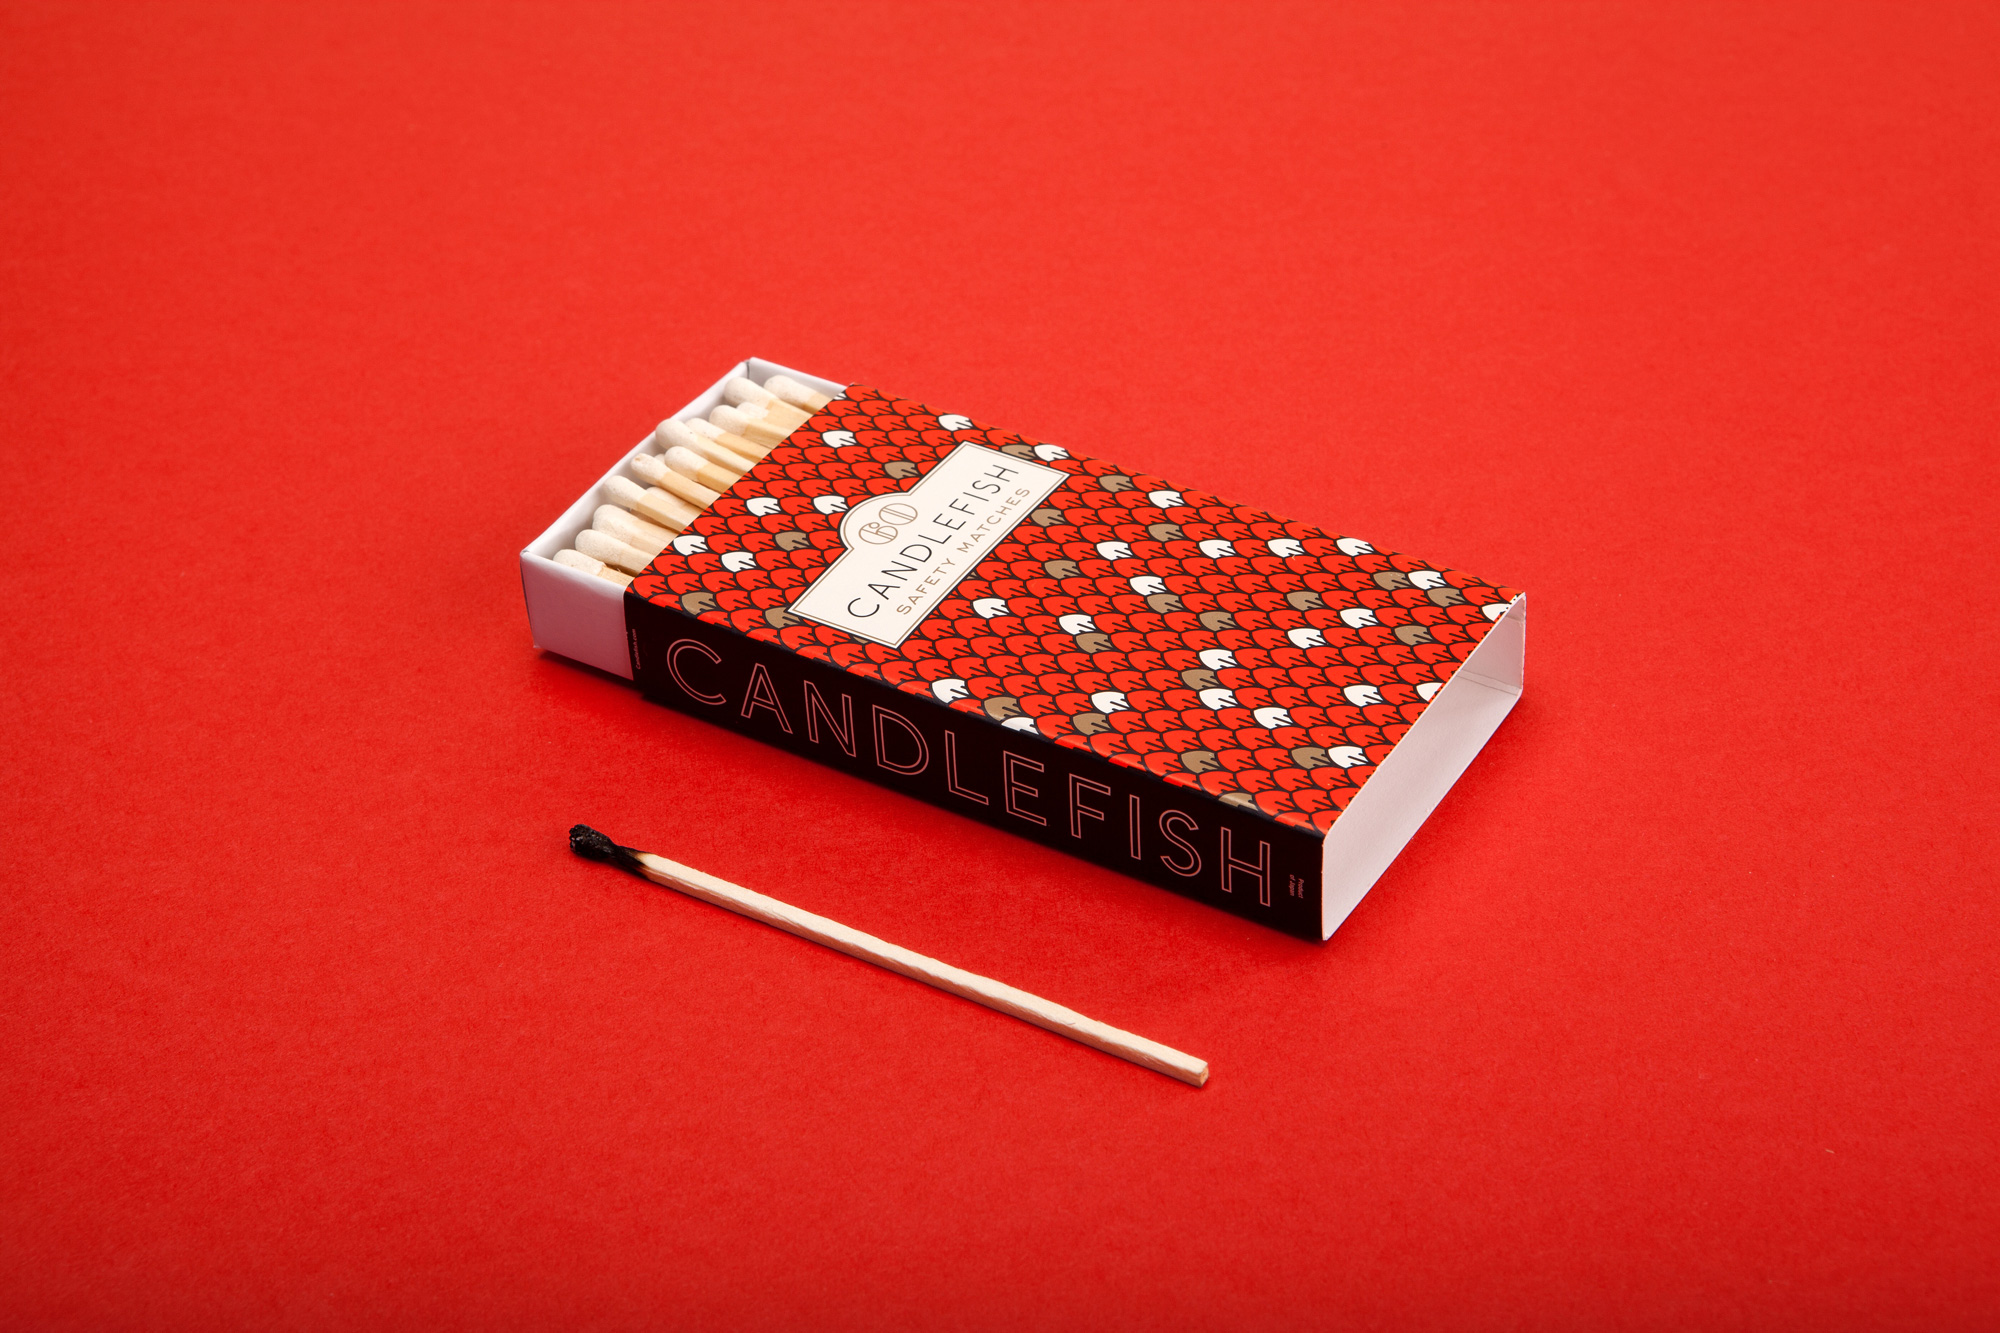 Candlefish 火柴蜡烛品牌形象设计火柴盒包装设计-上海品牌策划设计公司分享